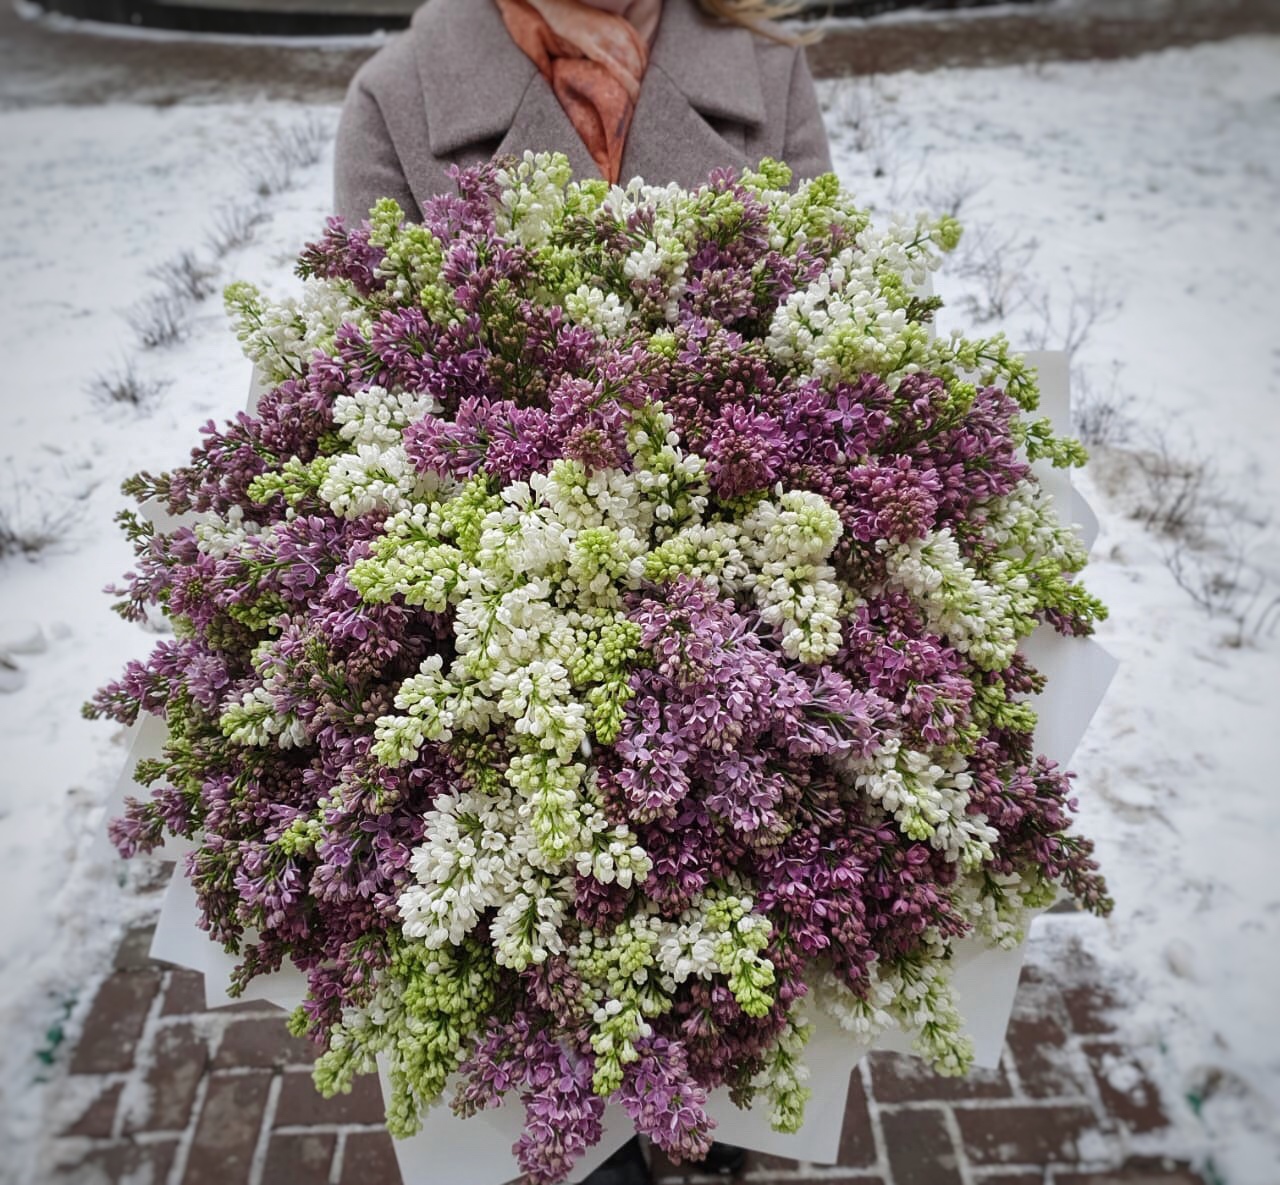 Купить букет / цветы Облако сирени в Москве с доставкой по отличной цене